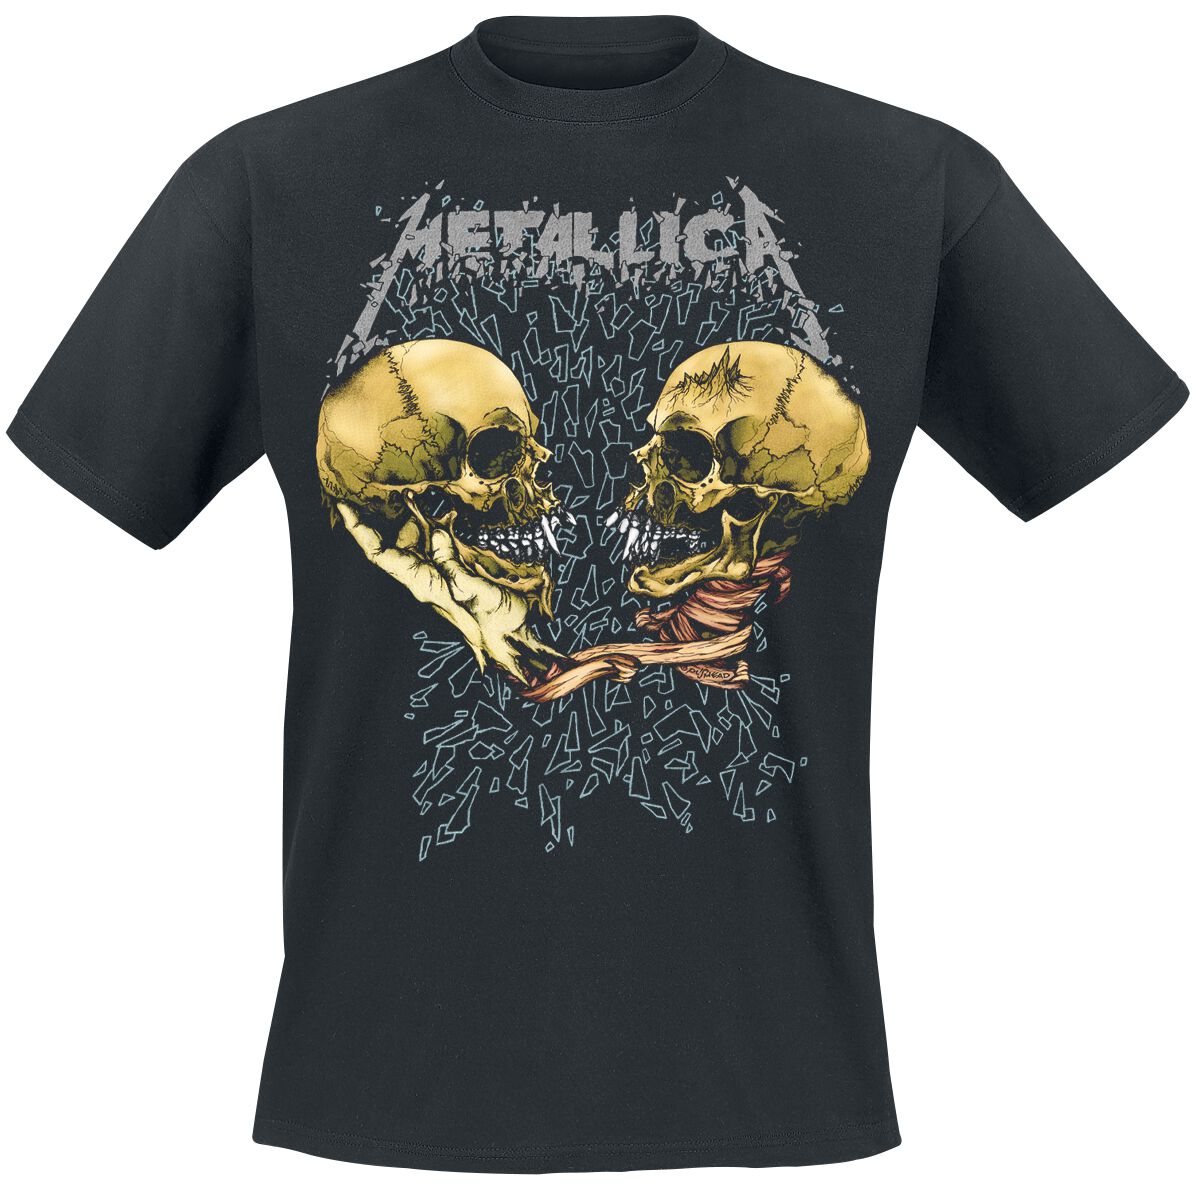 Metallica T-Shirt - Sad But True - S bis XXL - für Männer - Größe S - schwarz  - Lizenziertes Merchandise!